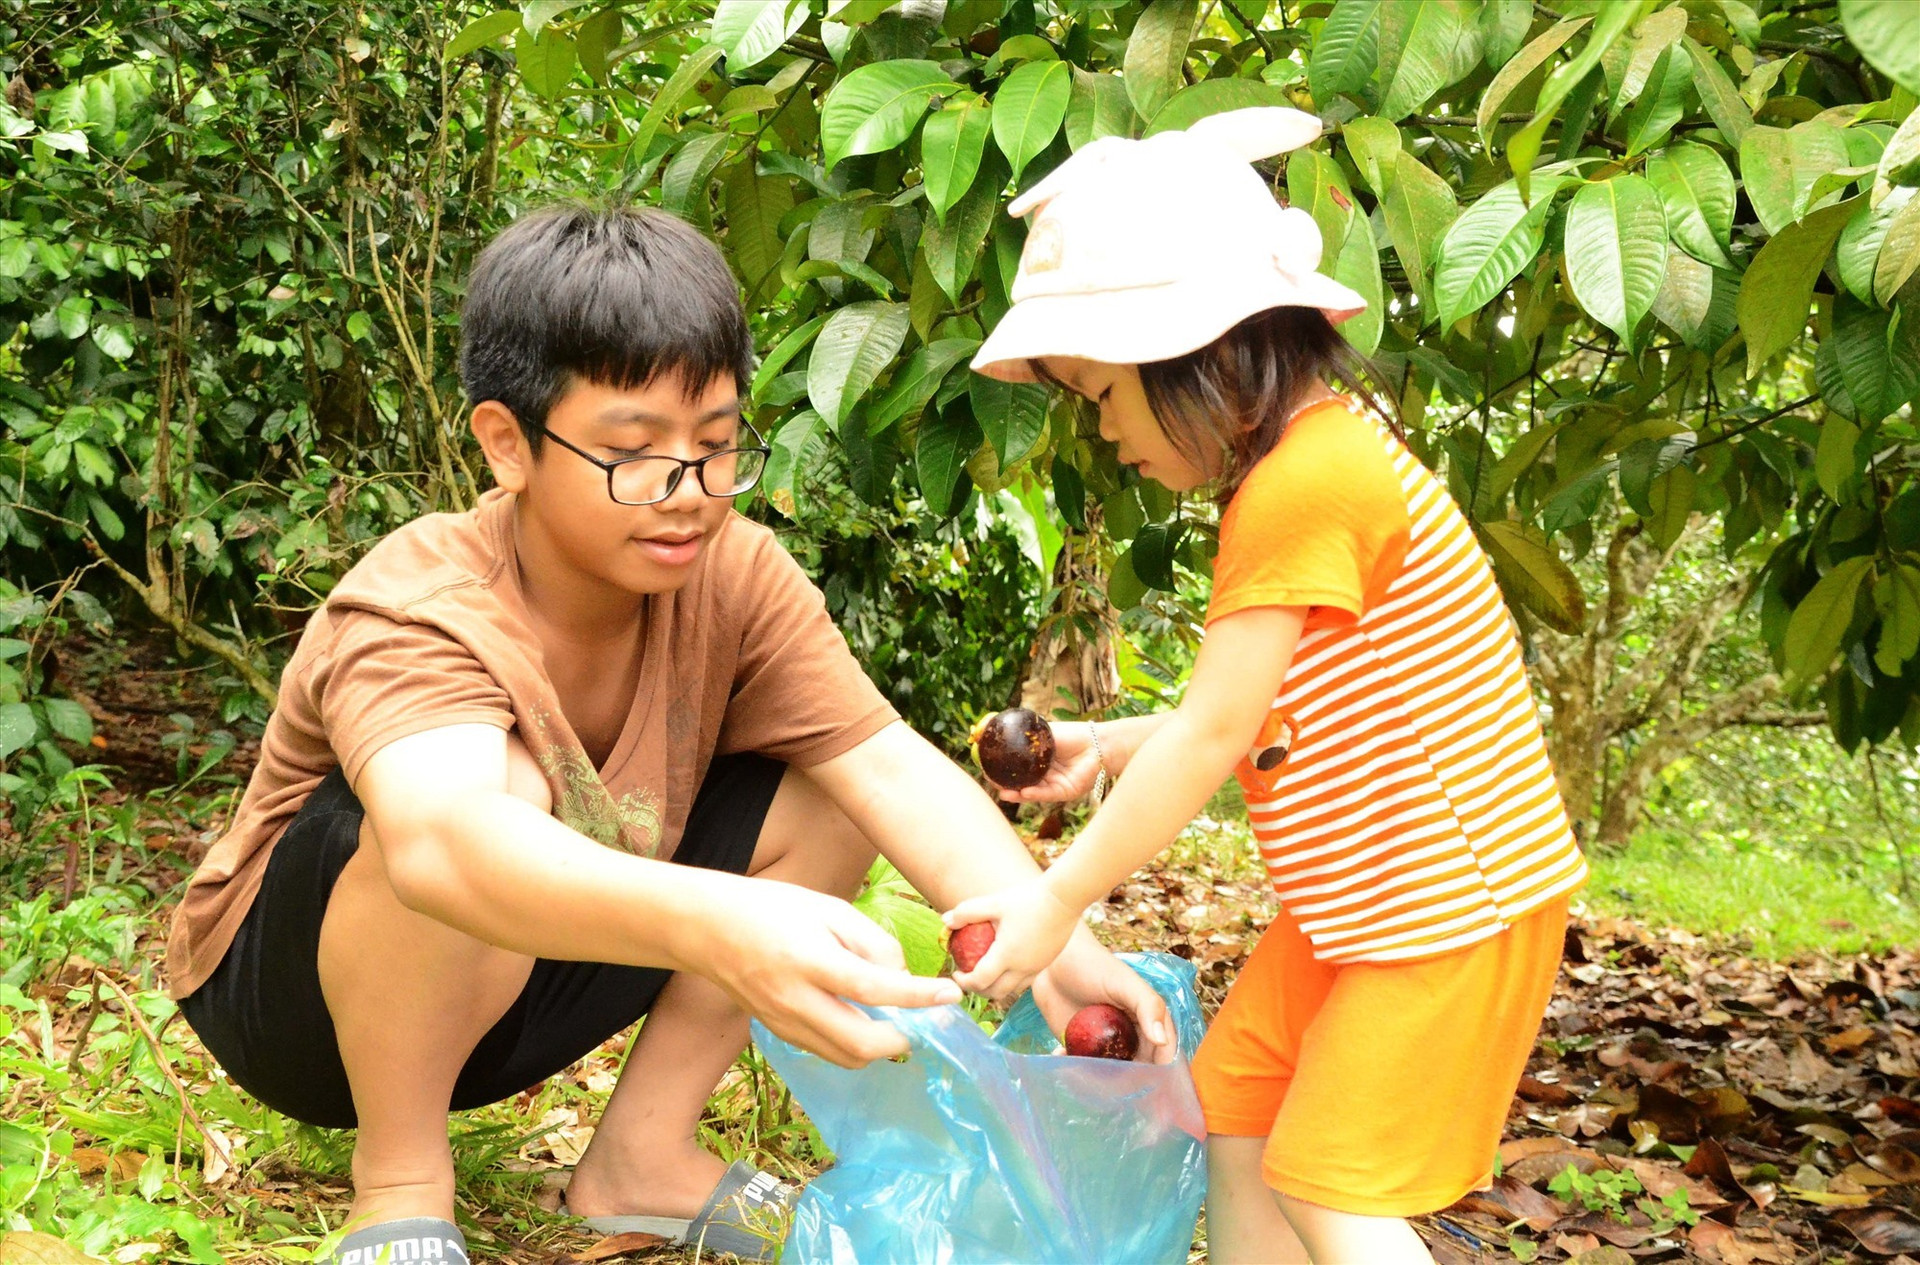 Children help their parents harvest fruits.